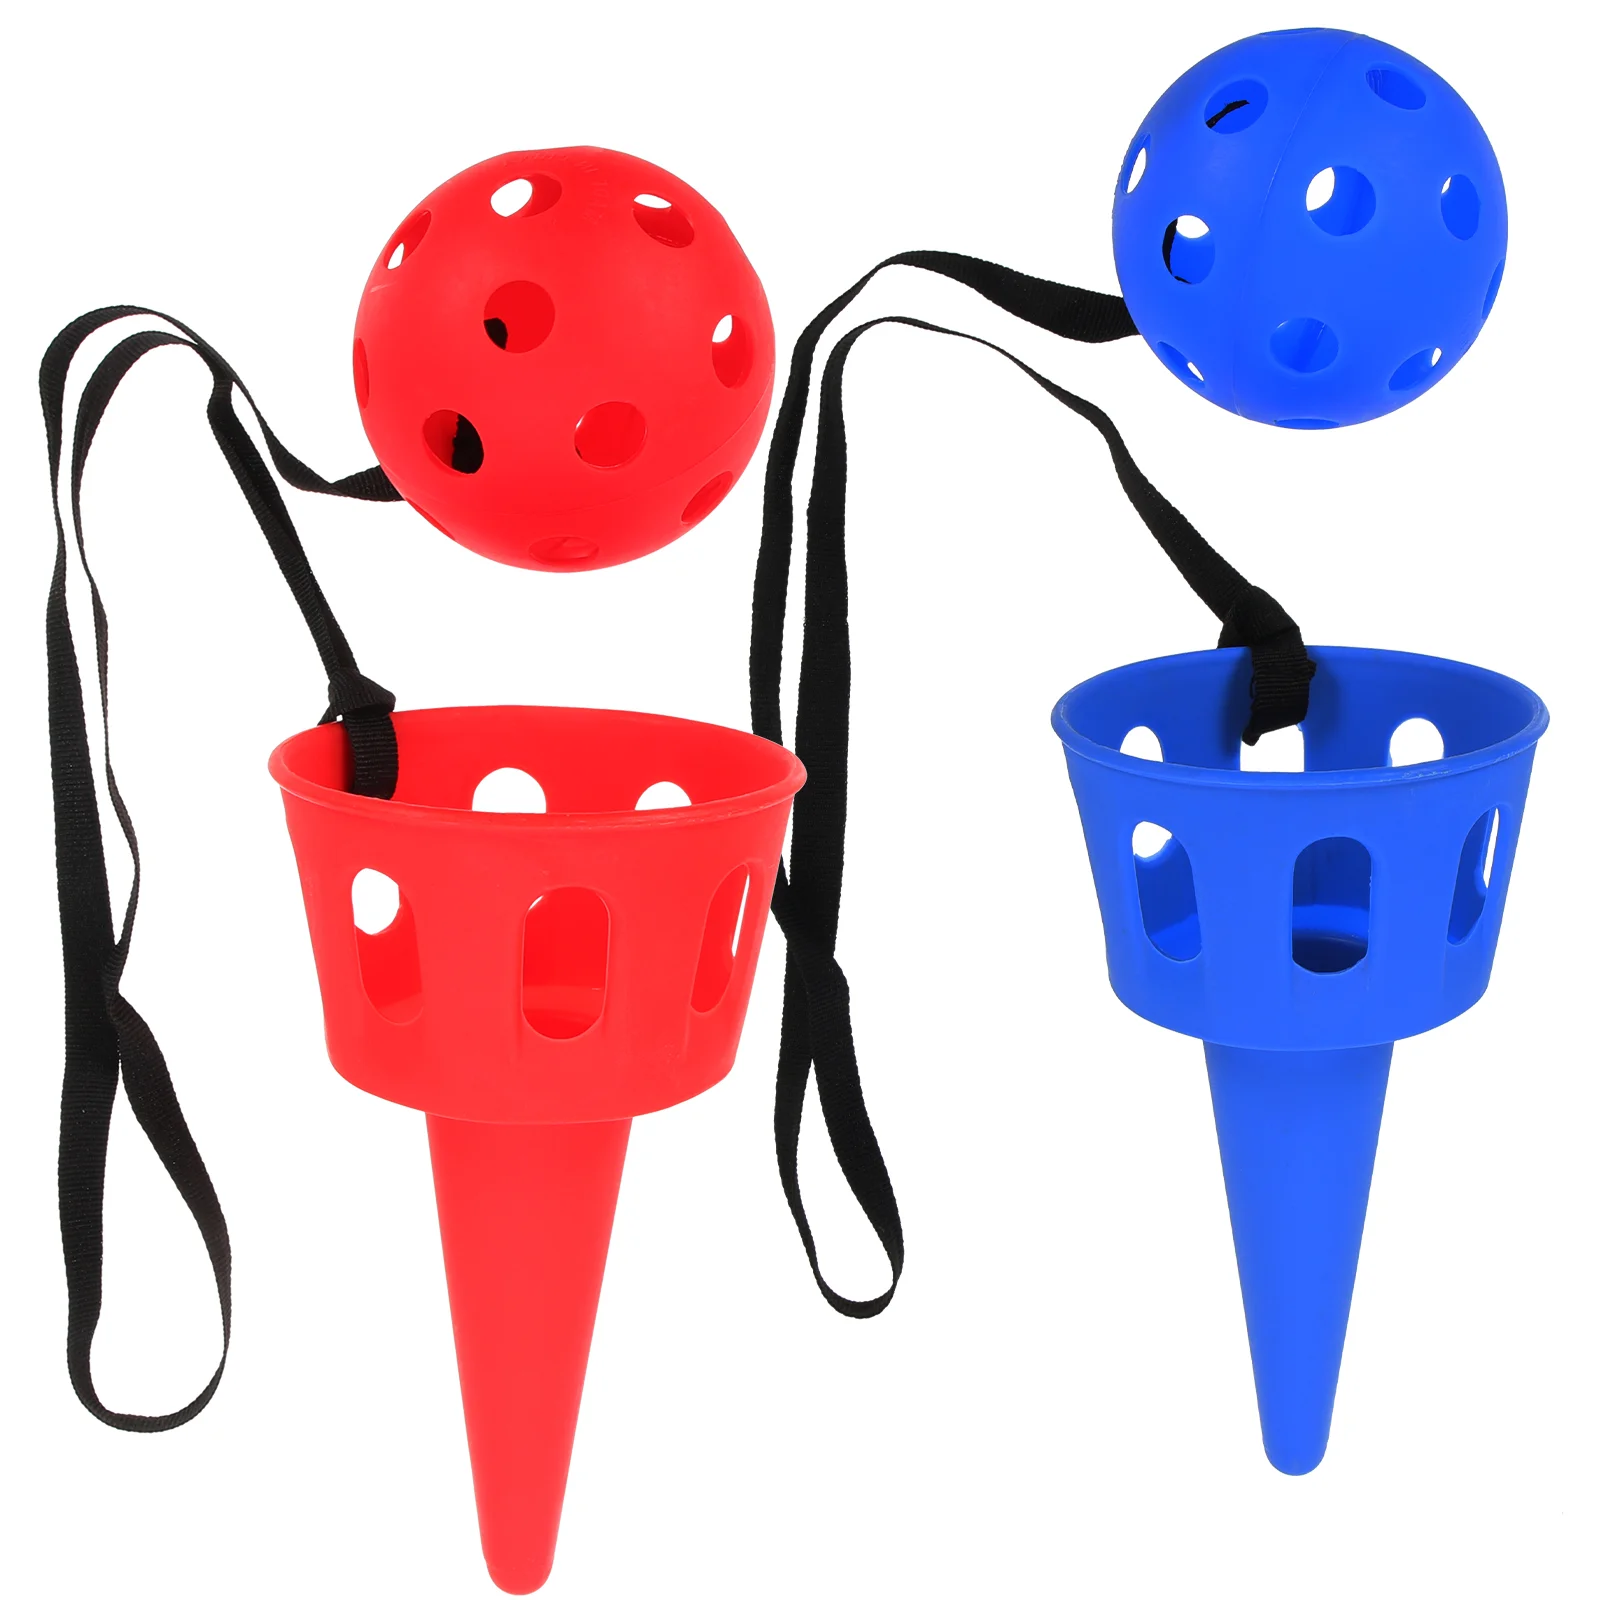 

2 комплекта и лови игры с пусковой установкой корзины мячи бросать ковш Игрушки для мальчиков взрослые в помещении на открытом воздухе Газон Кемпинг пляж красный синий